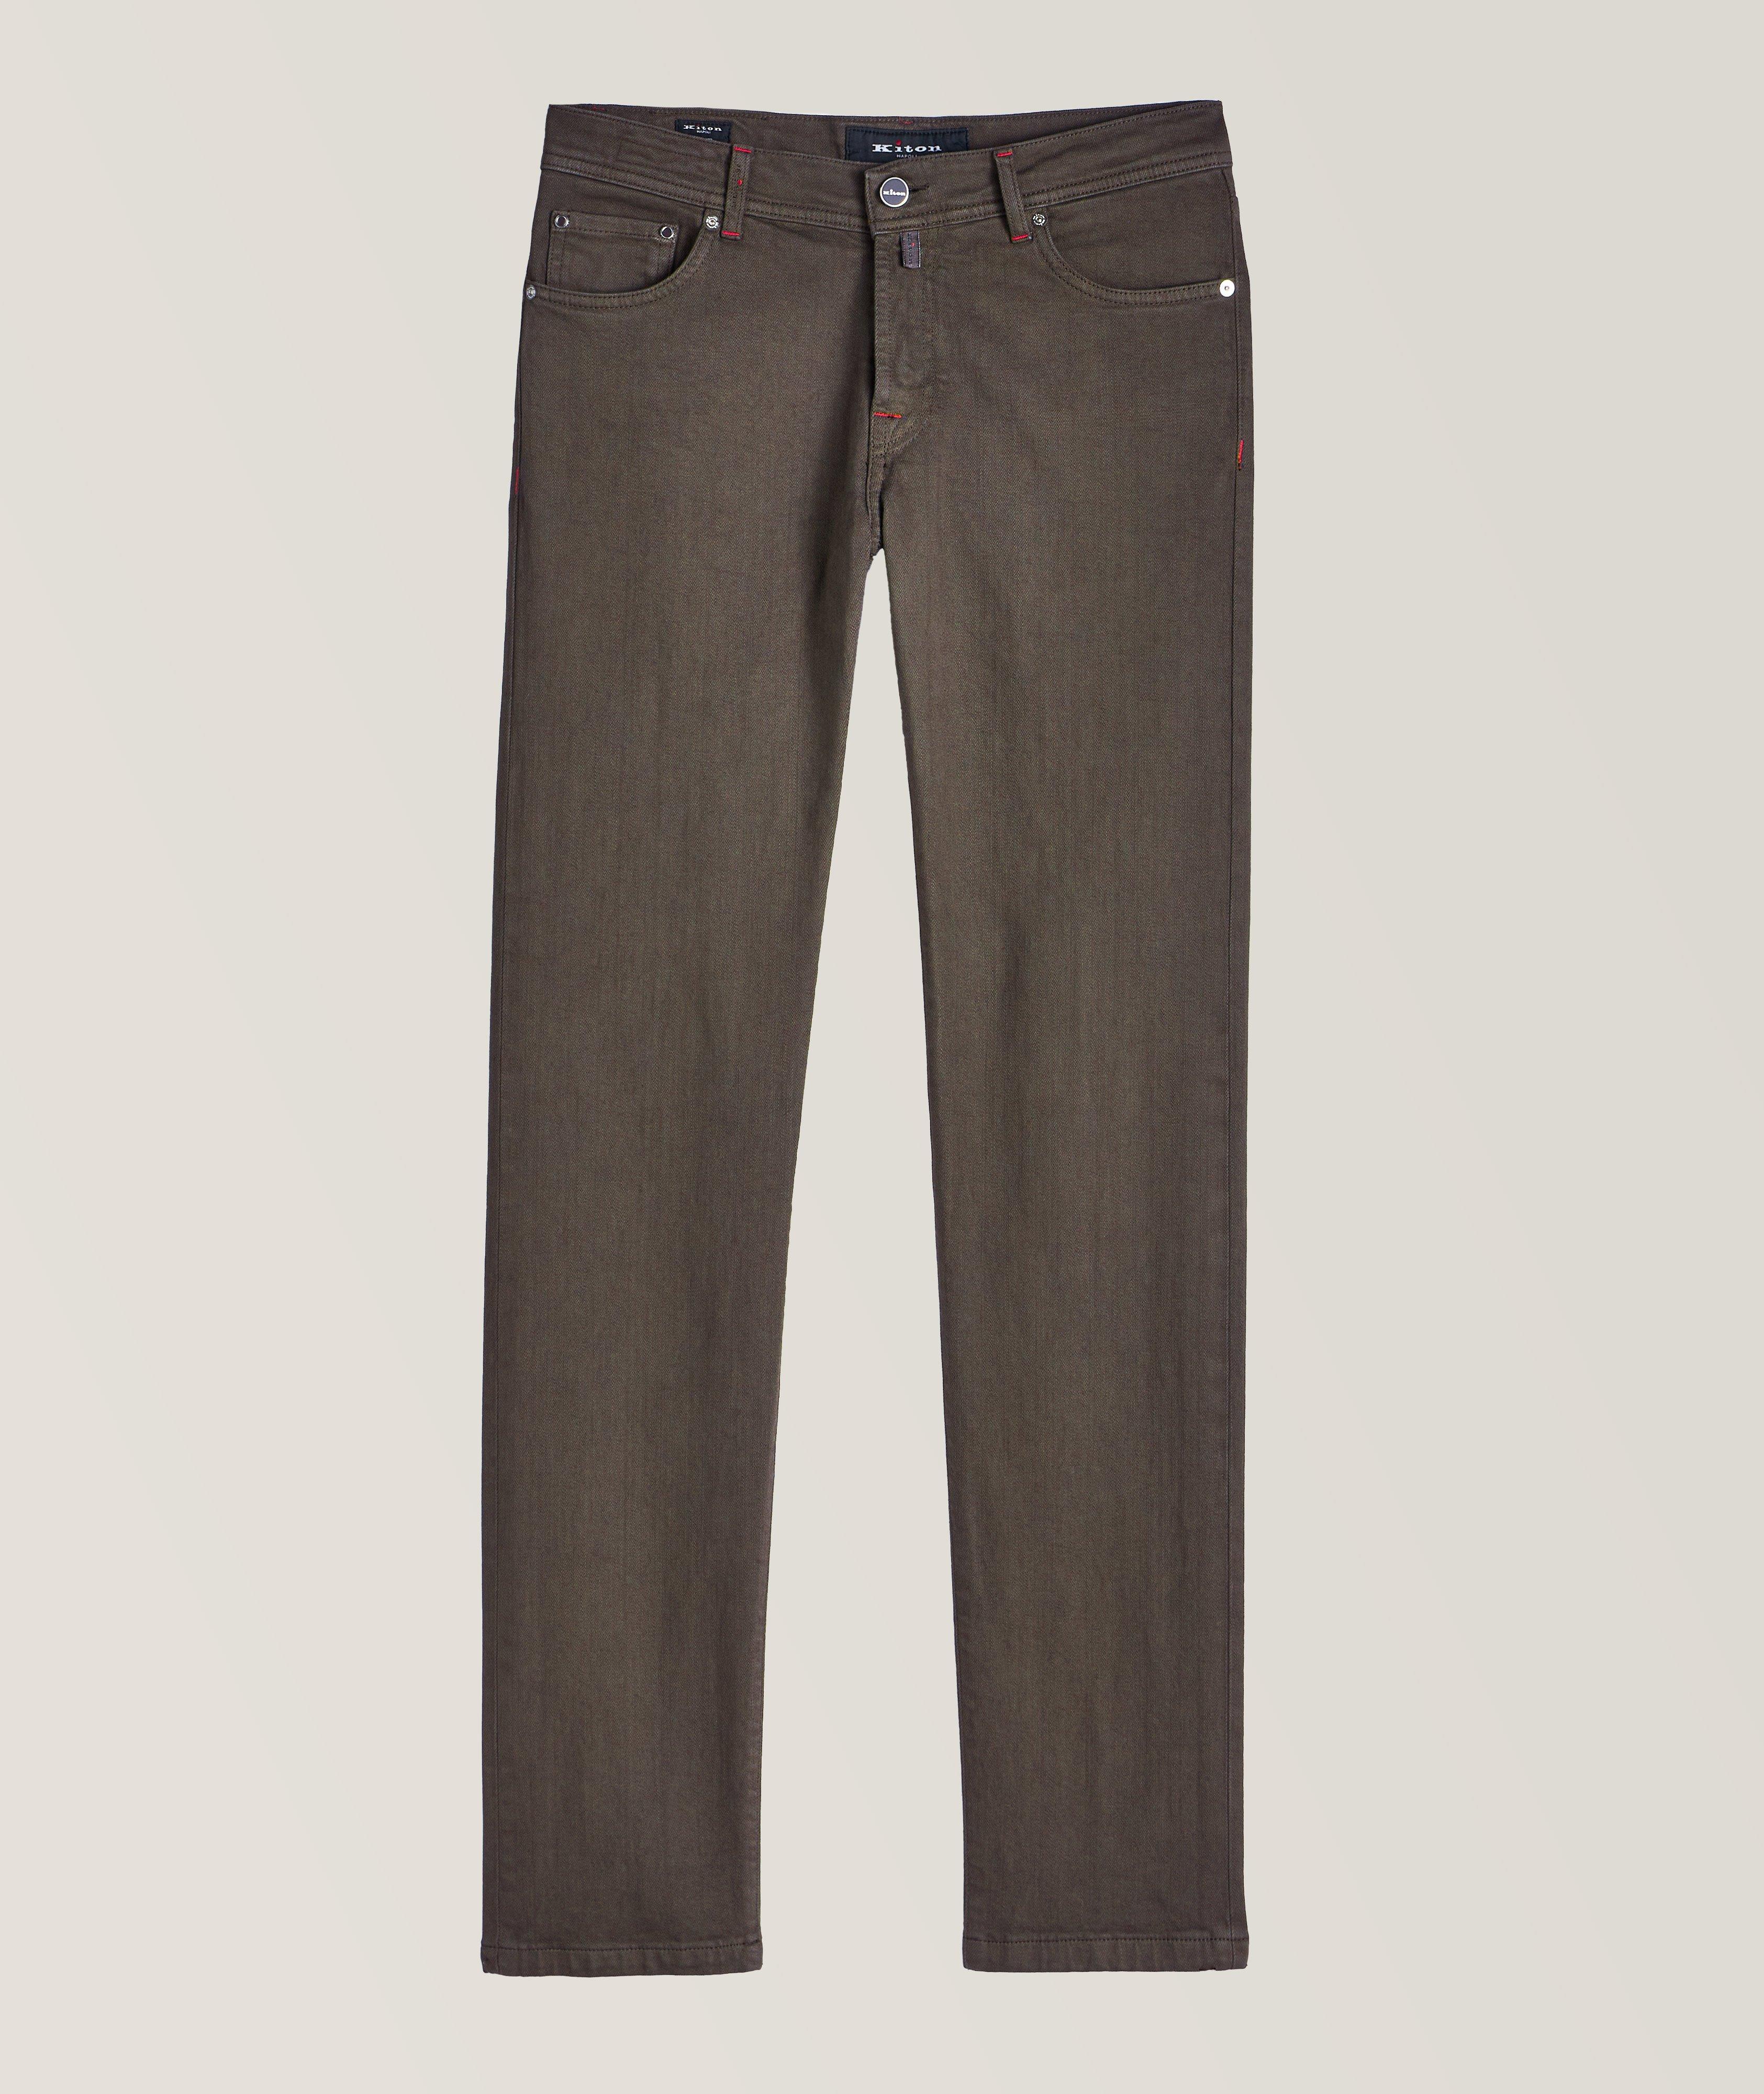 Kurabo Spun Five-Pocket Cotton-Stretch Pants image 0